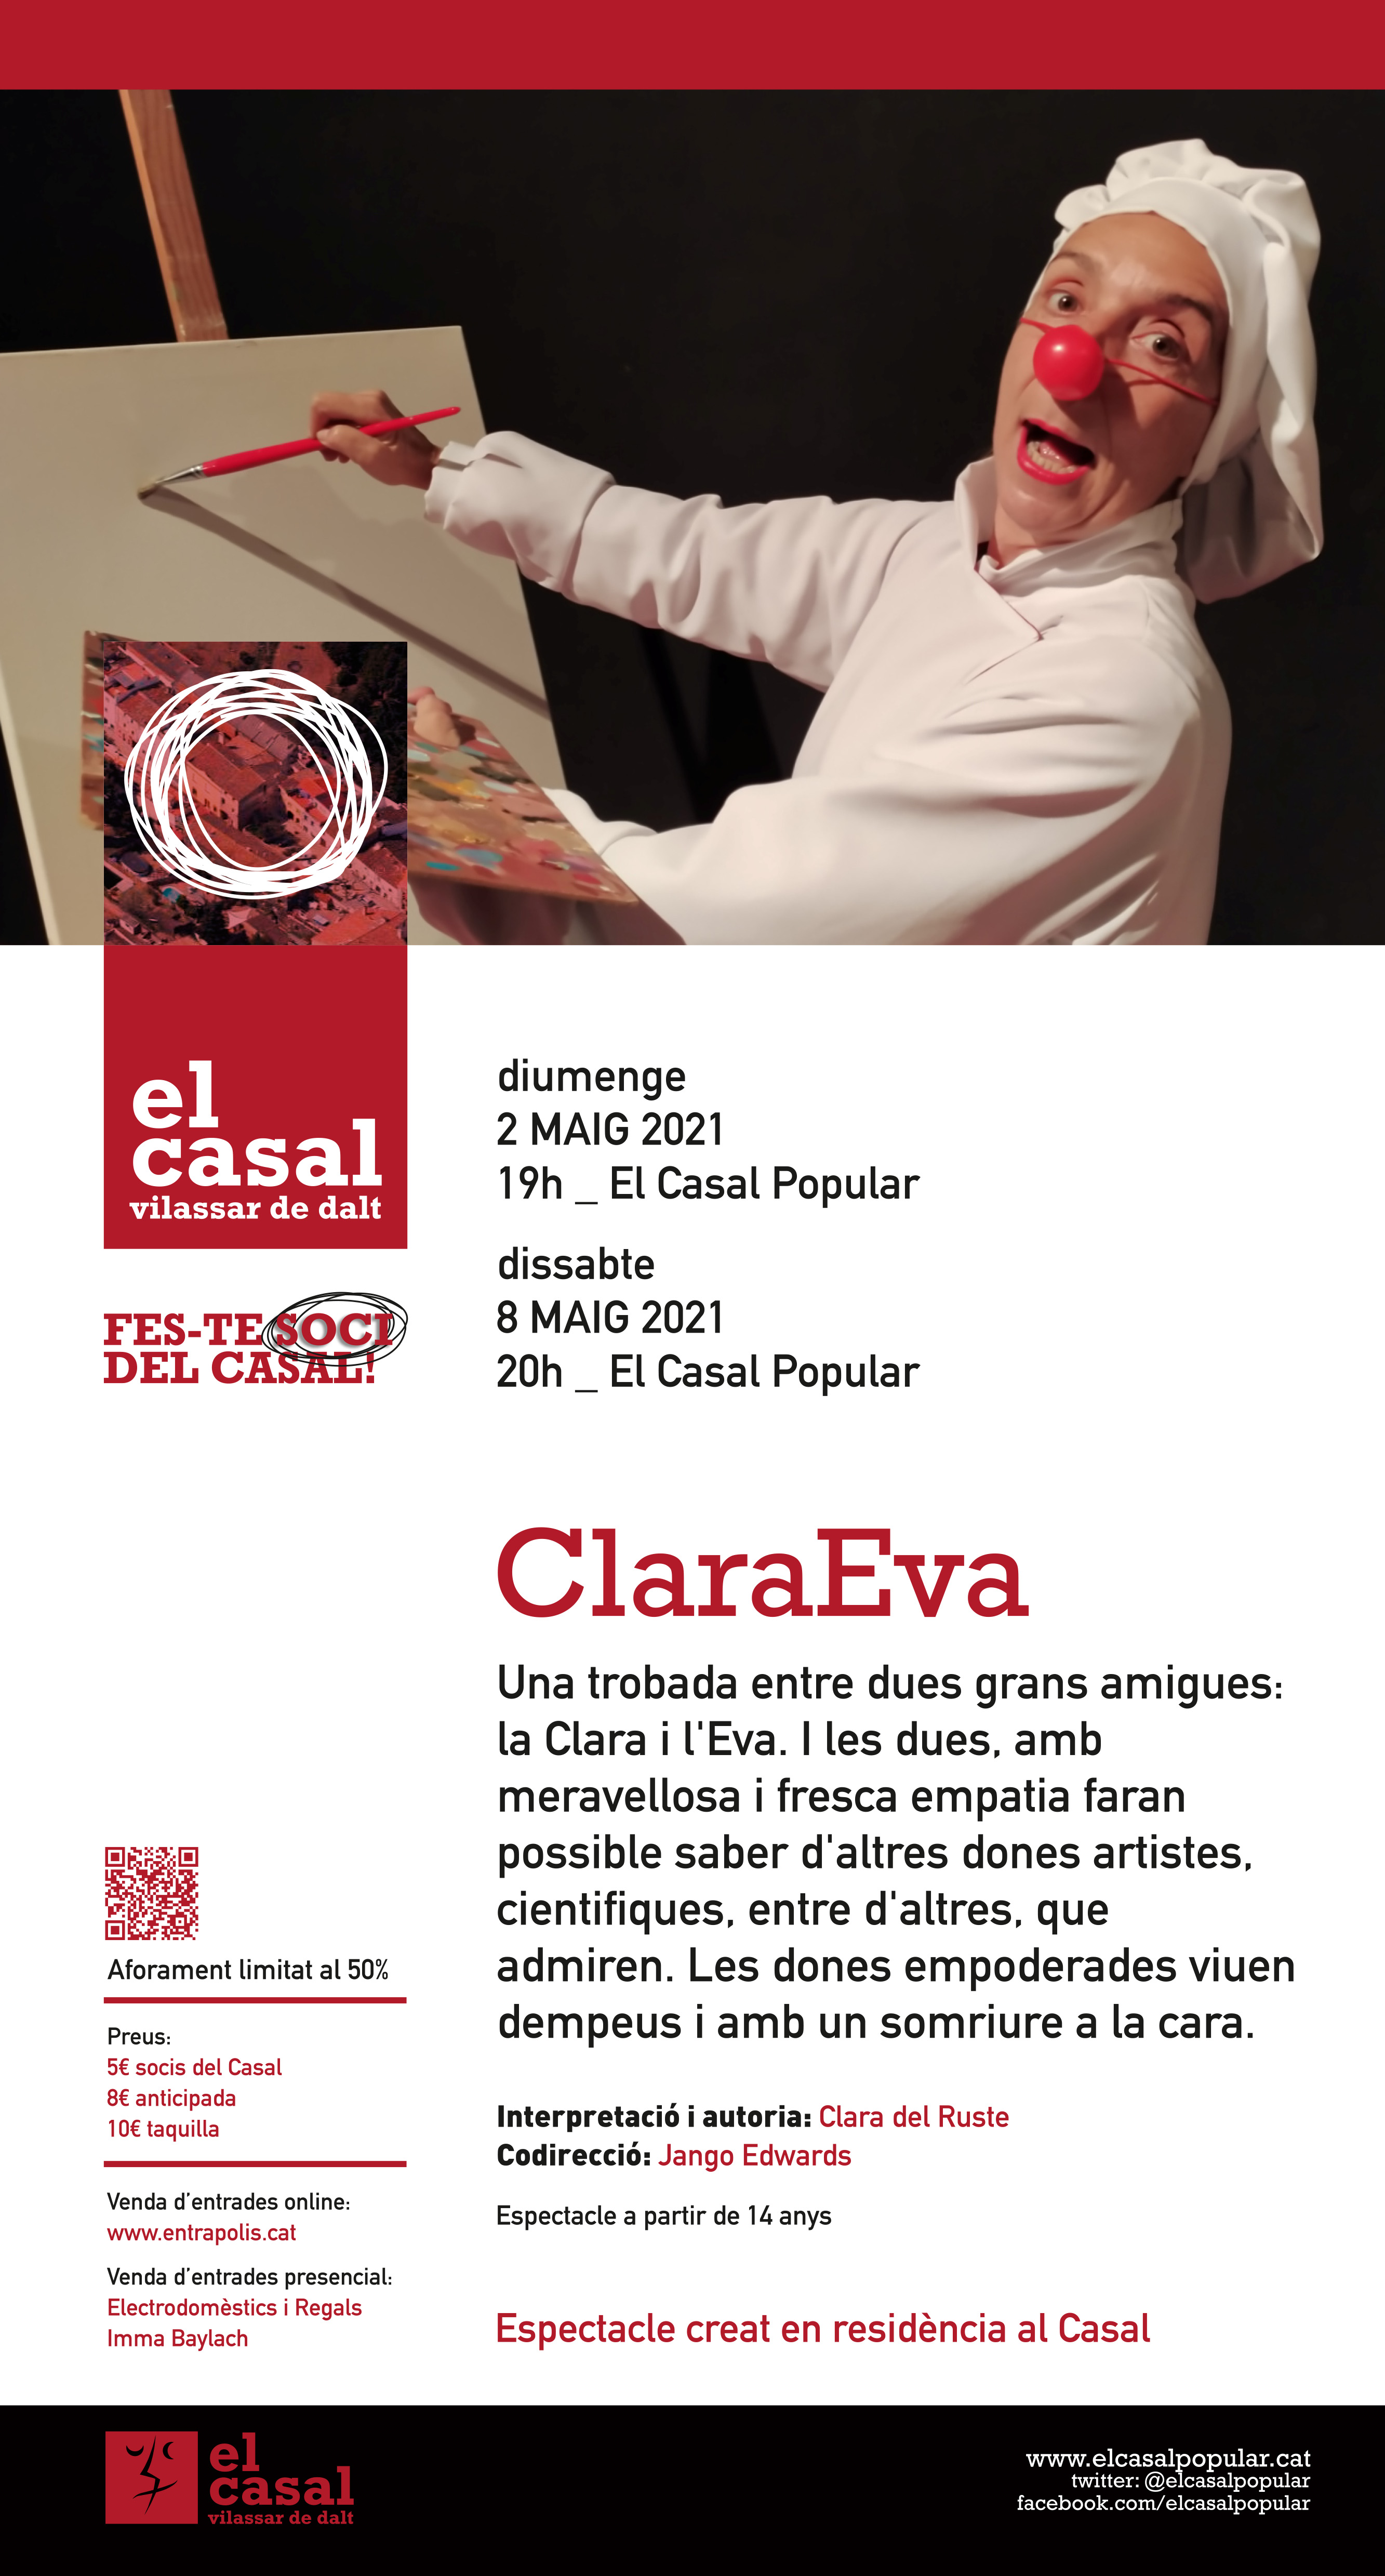 Clara Eva